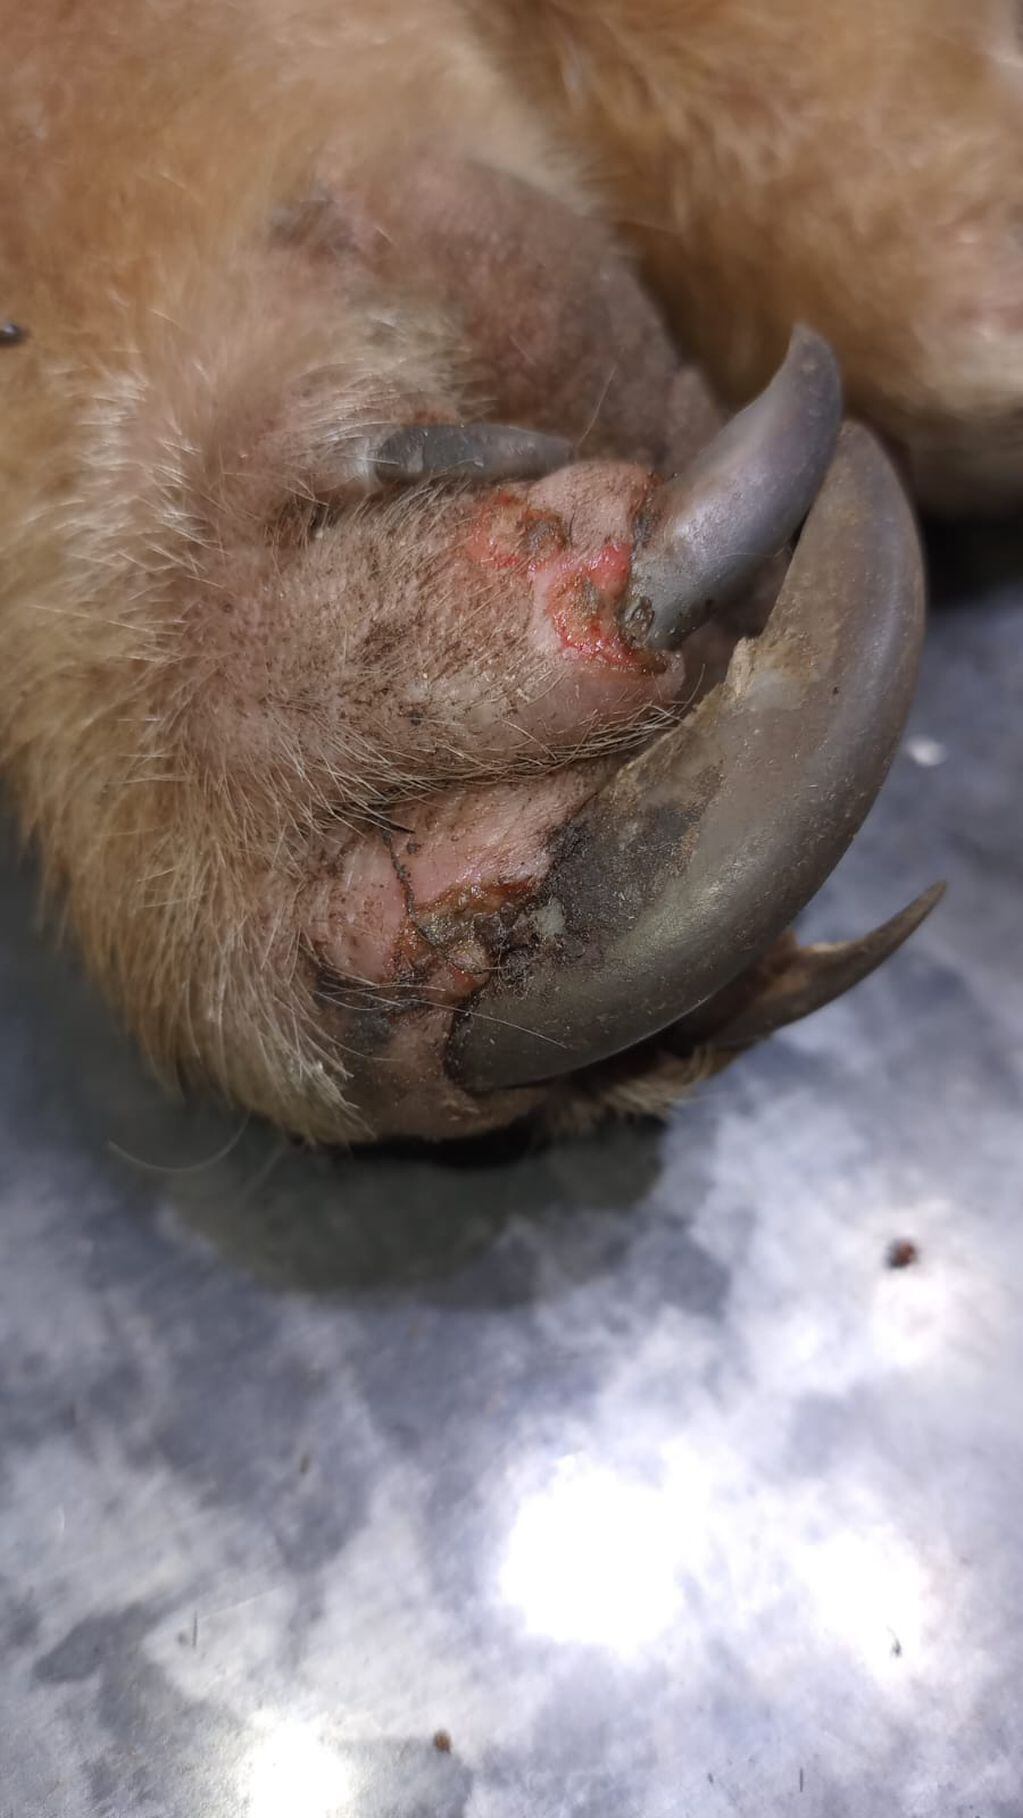 Fotos y video: un oso hormiguero traído de forma ilegal a Mendoza sorprendió a unos puesteros en Santa Rosa. Foto: Gentileza Fundación Cullunche.